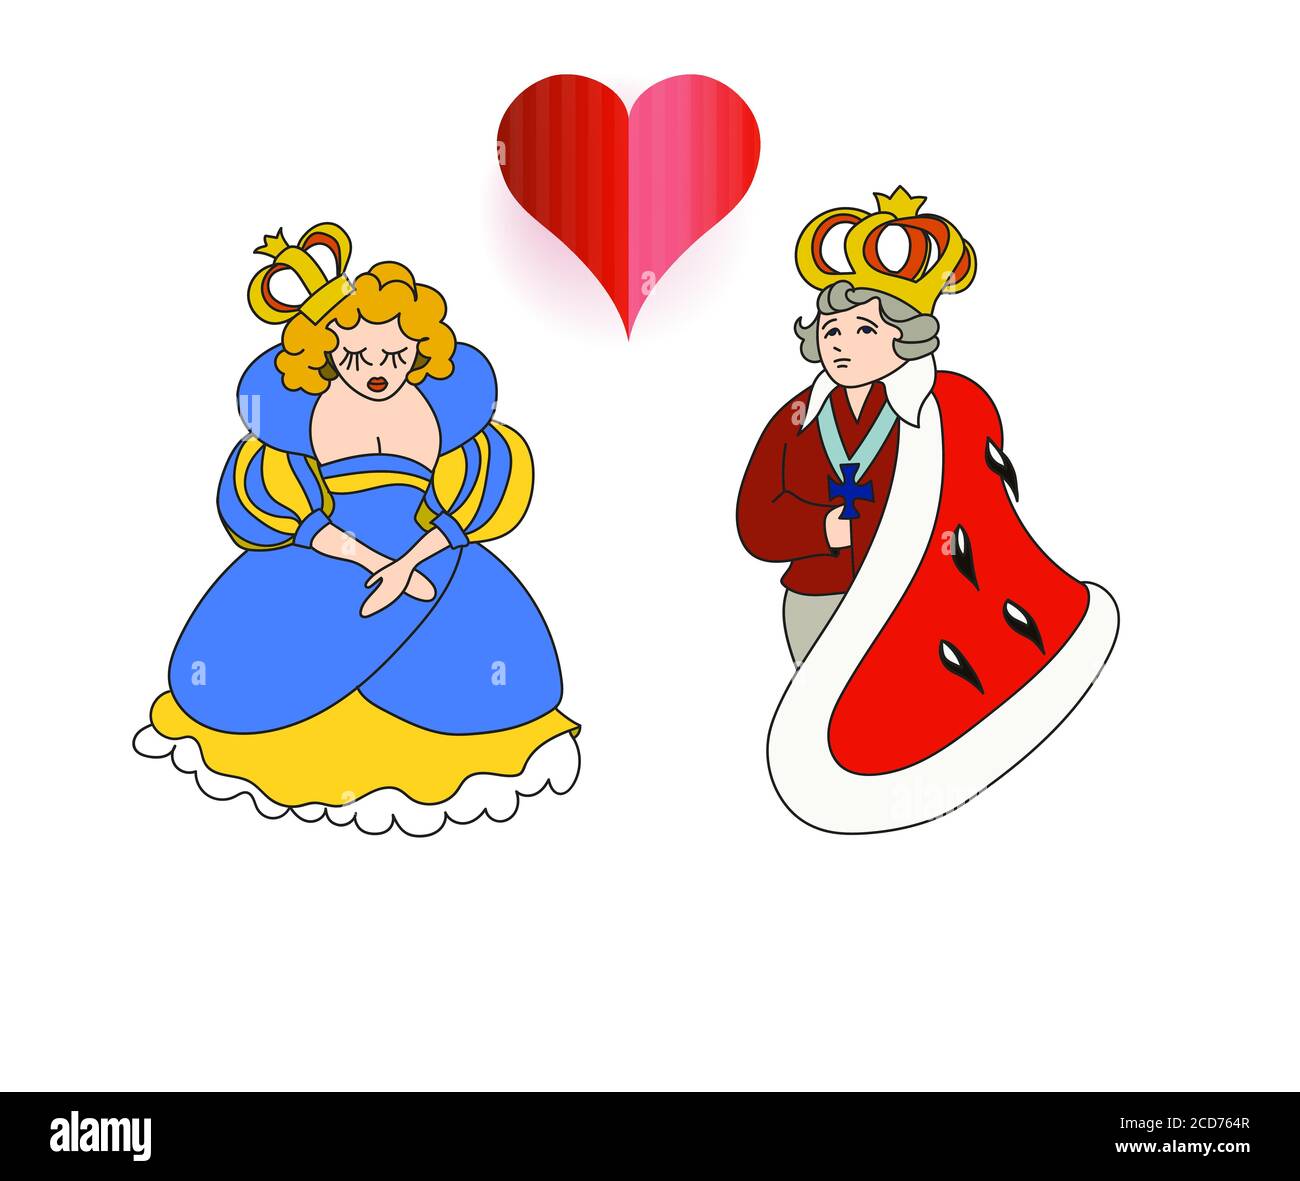 Queen et king dans le style de dessin animé, l'impératrice de famille royale et l'empereur vecteur enfants illustration Illustration de Vecteur